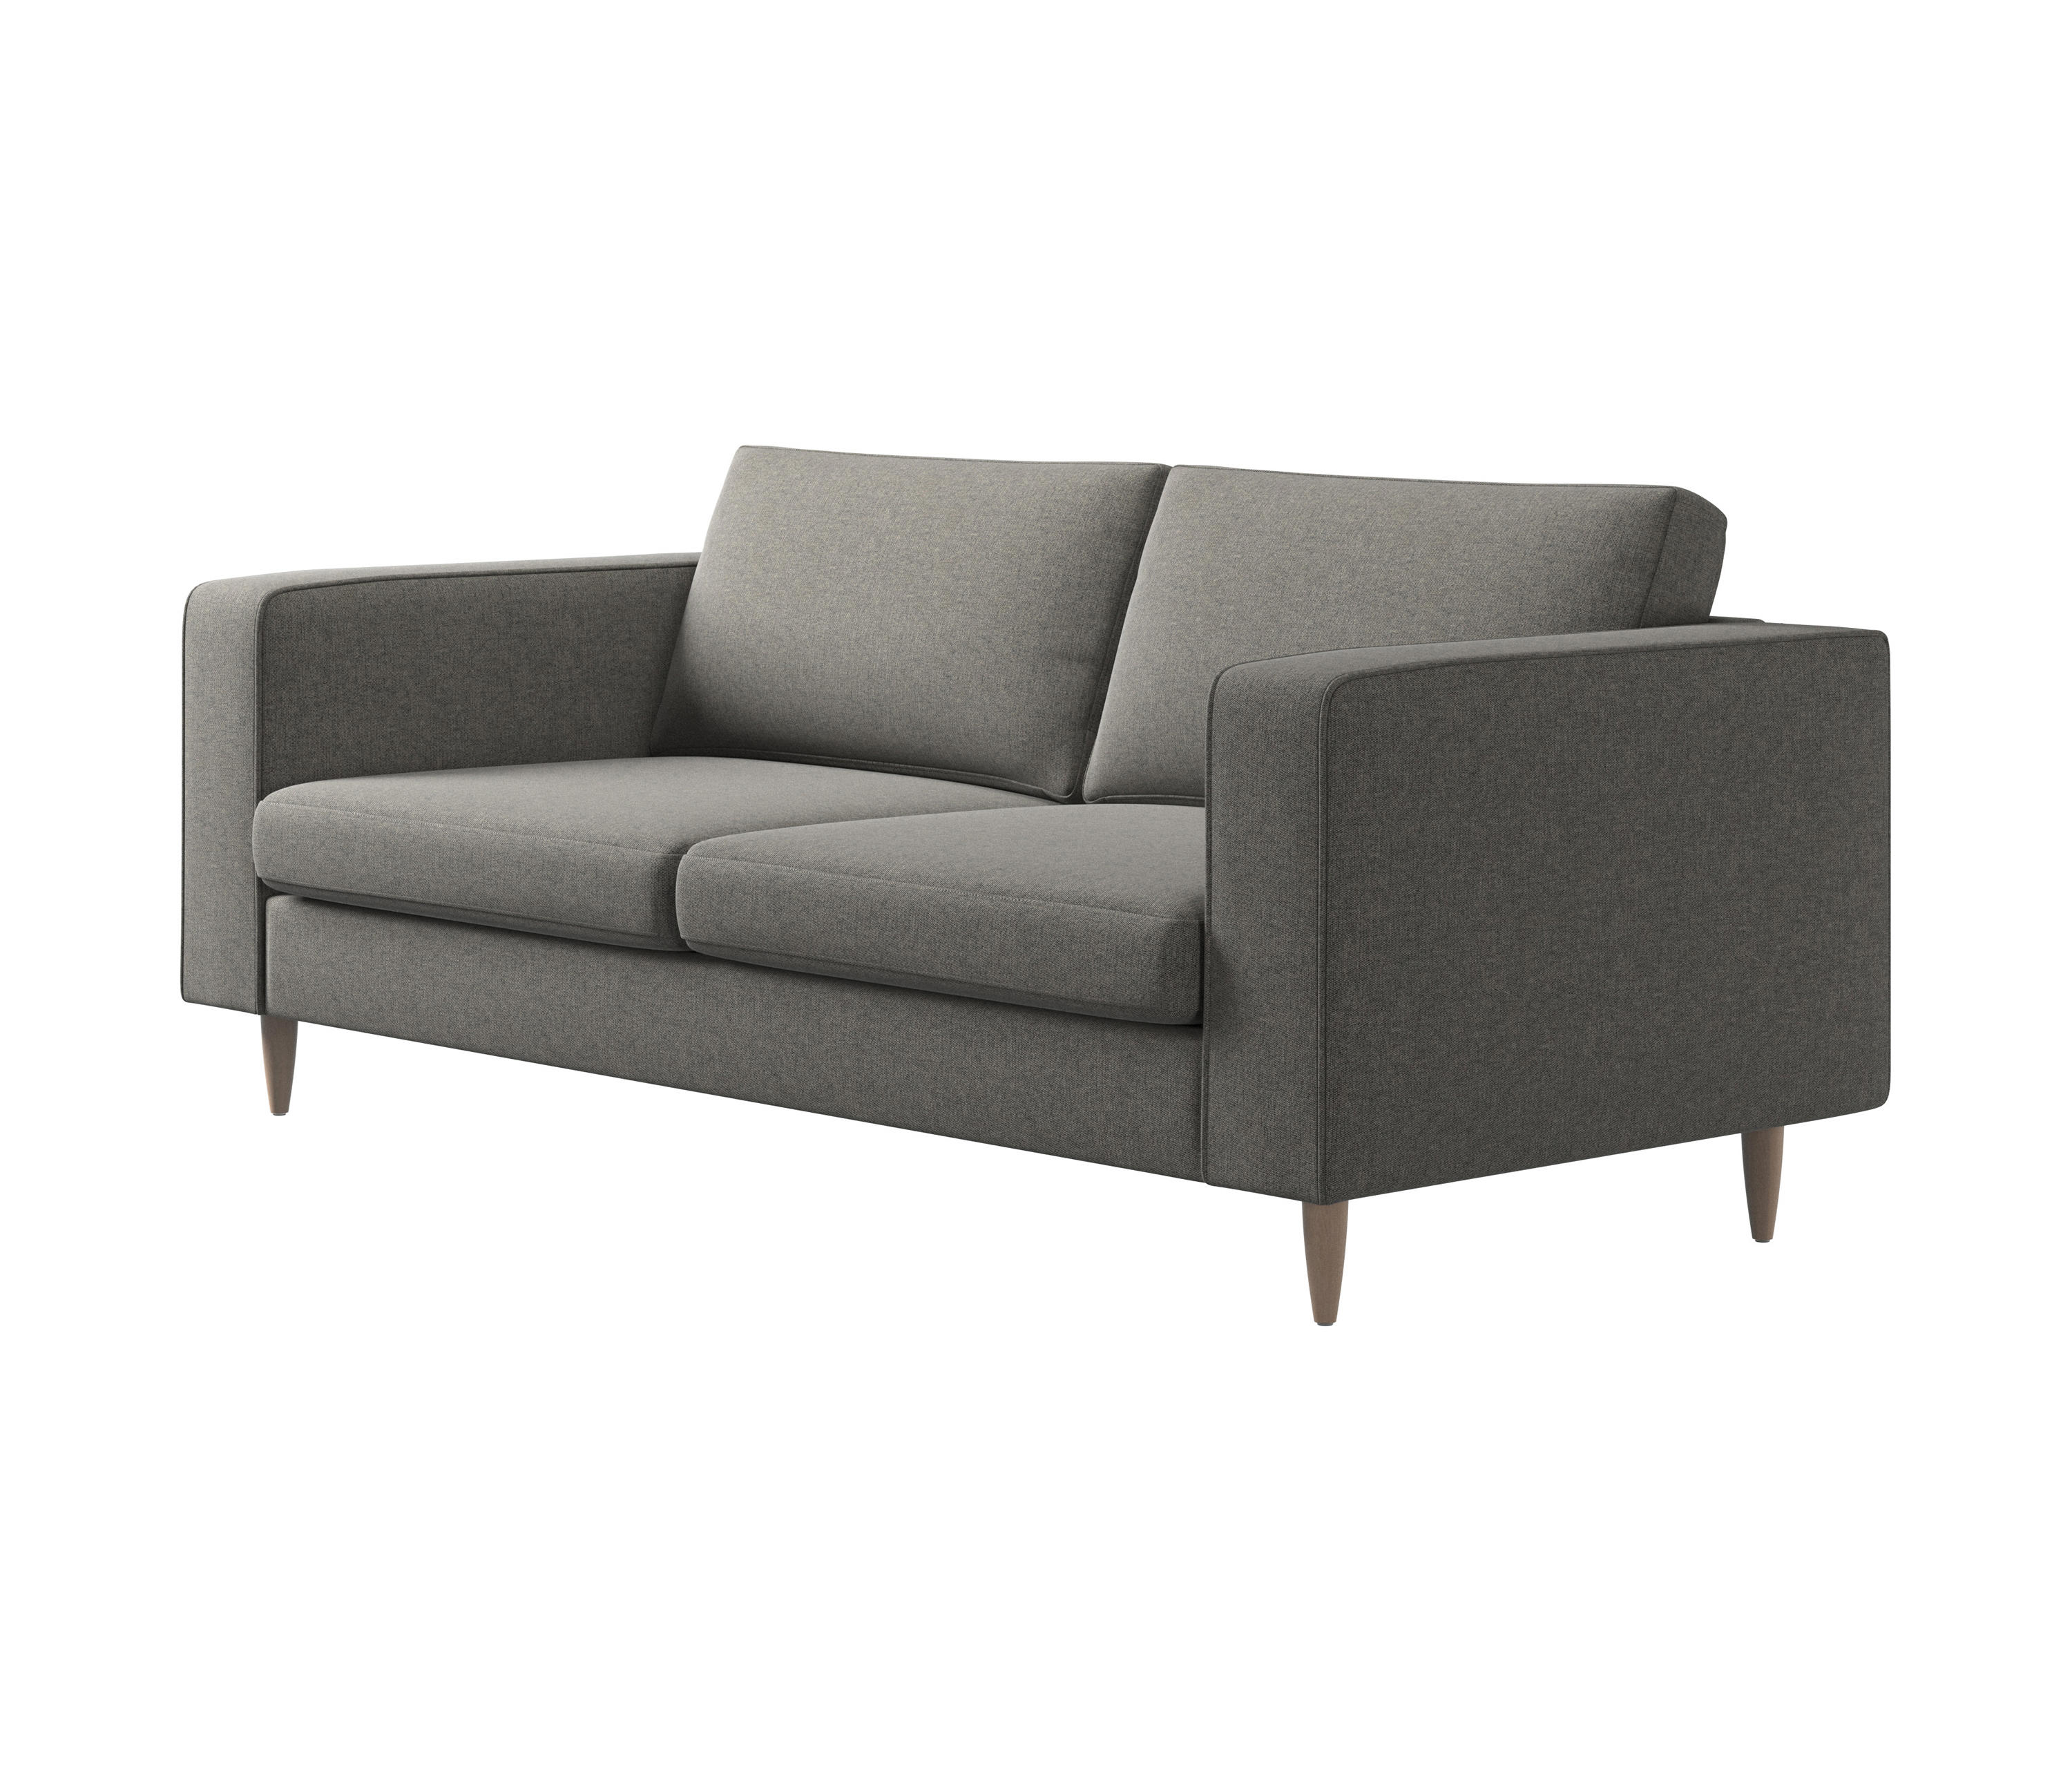 Indivi 2 Seater Sofa & designer furniture | Architonic